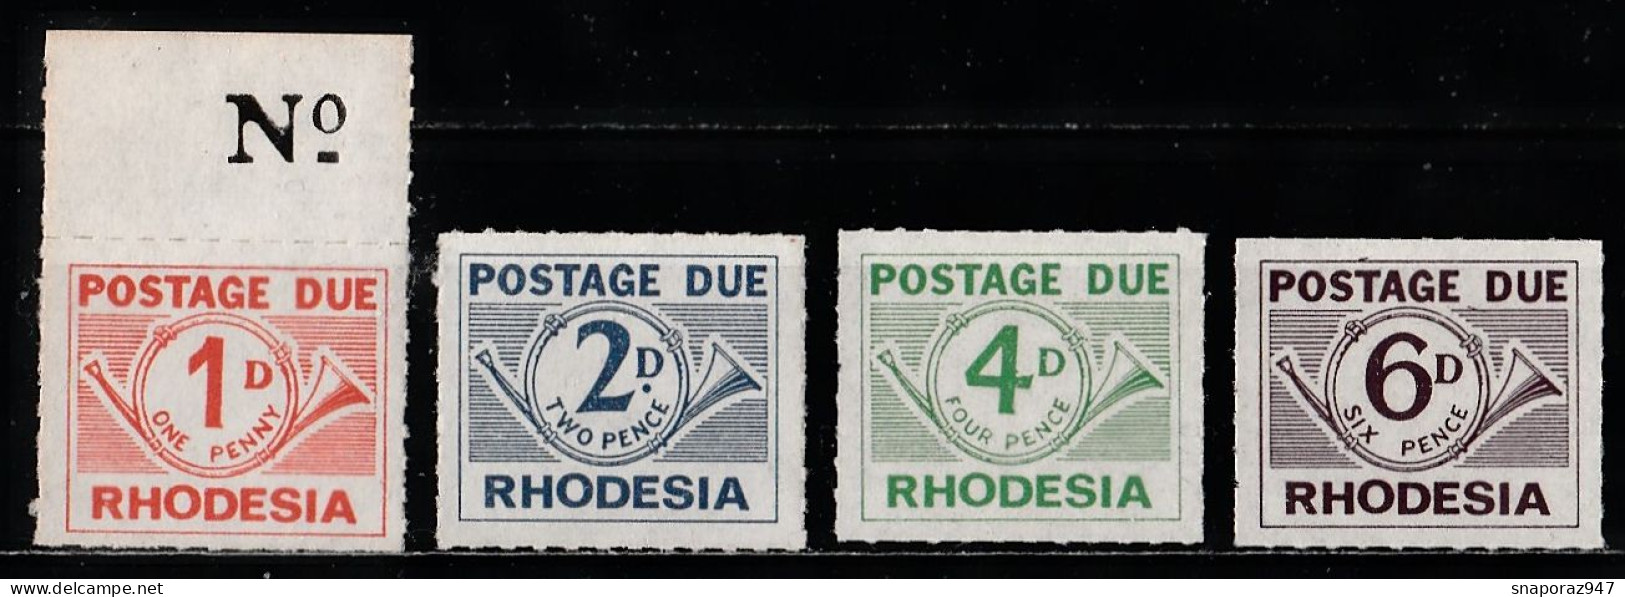 1965 Rhodesia Timbre Taxe Set MNH** Ta7 - Rhodesia (1964-1980)